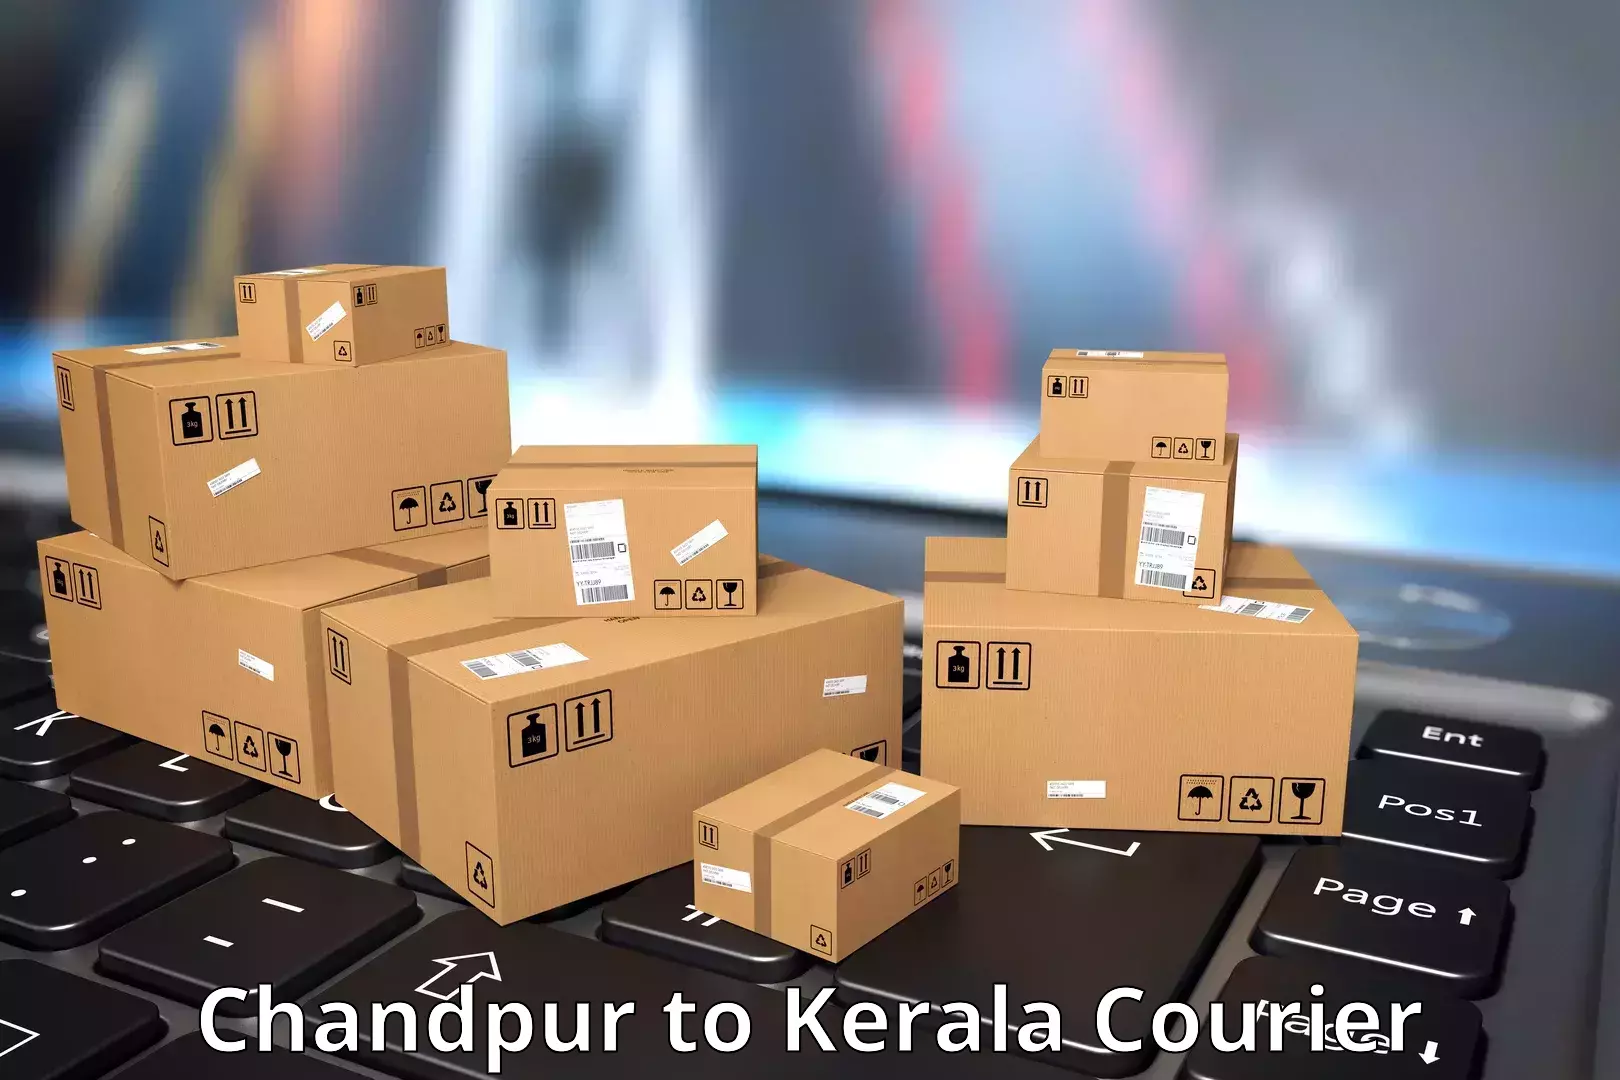 Online courier booking Chandpur to Guruvayur